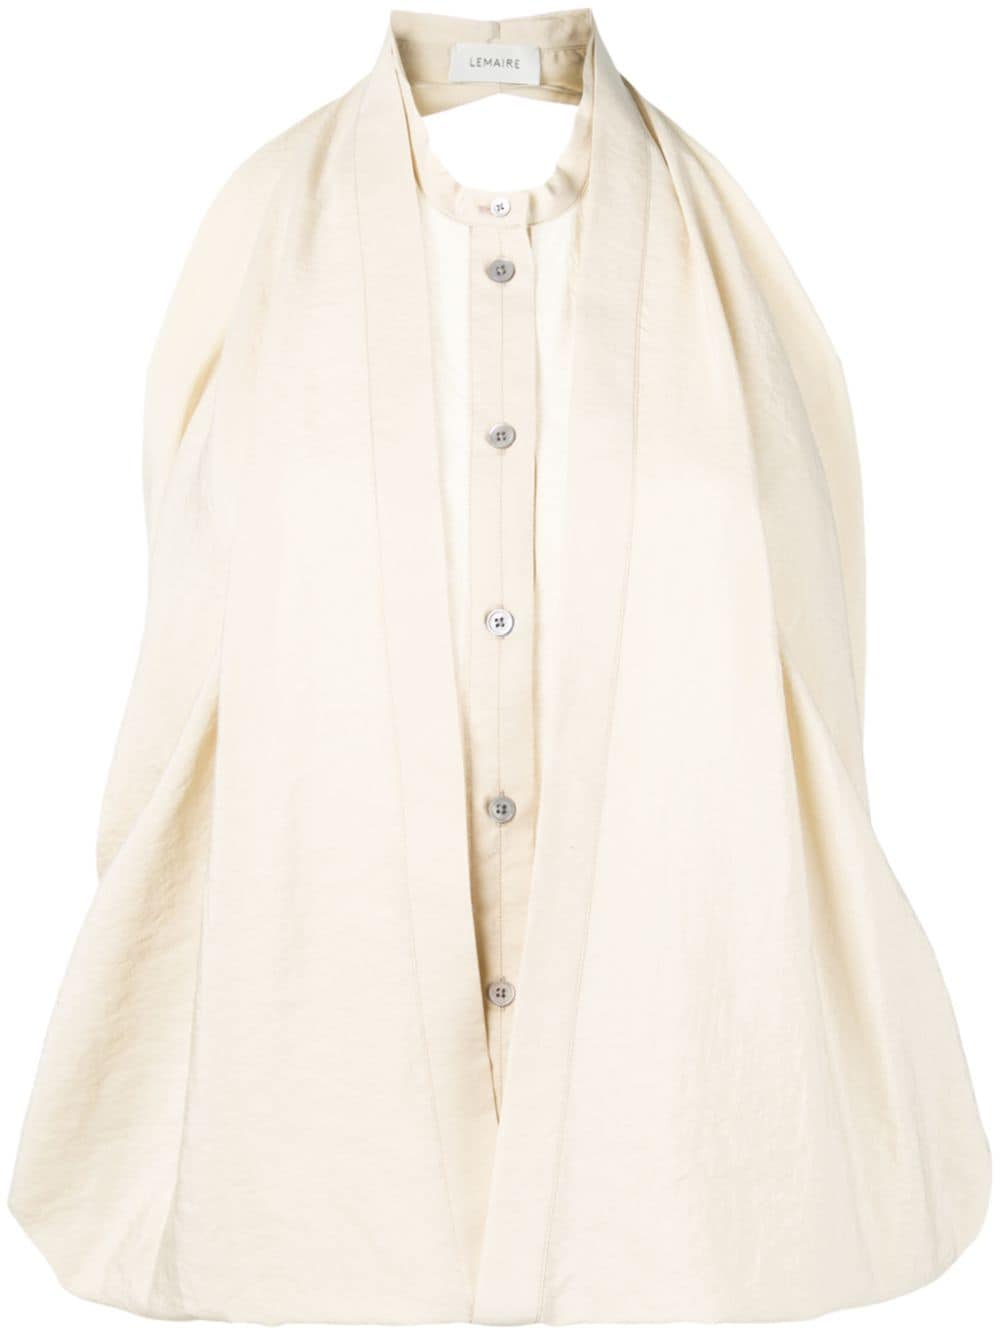 фото Lemaire многослойная блузка без рукавов